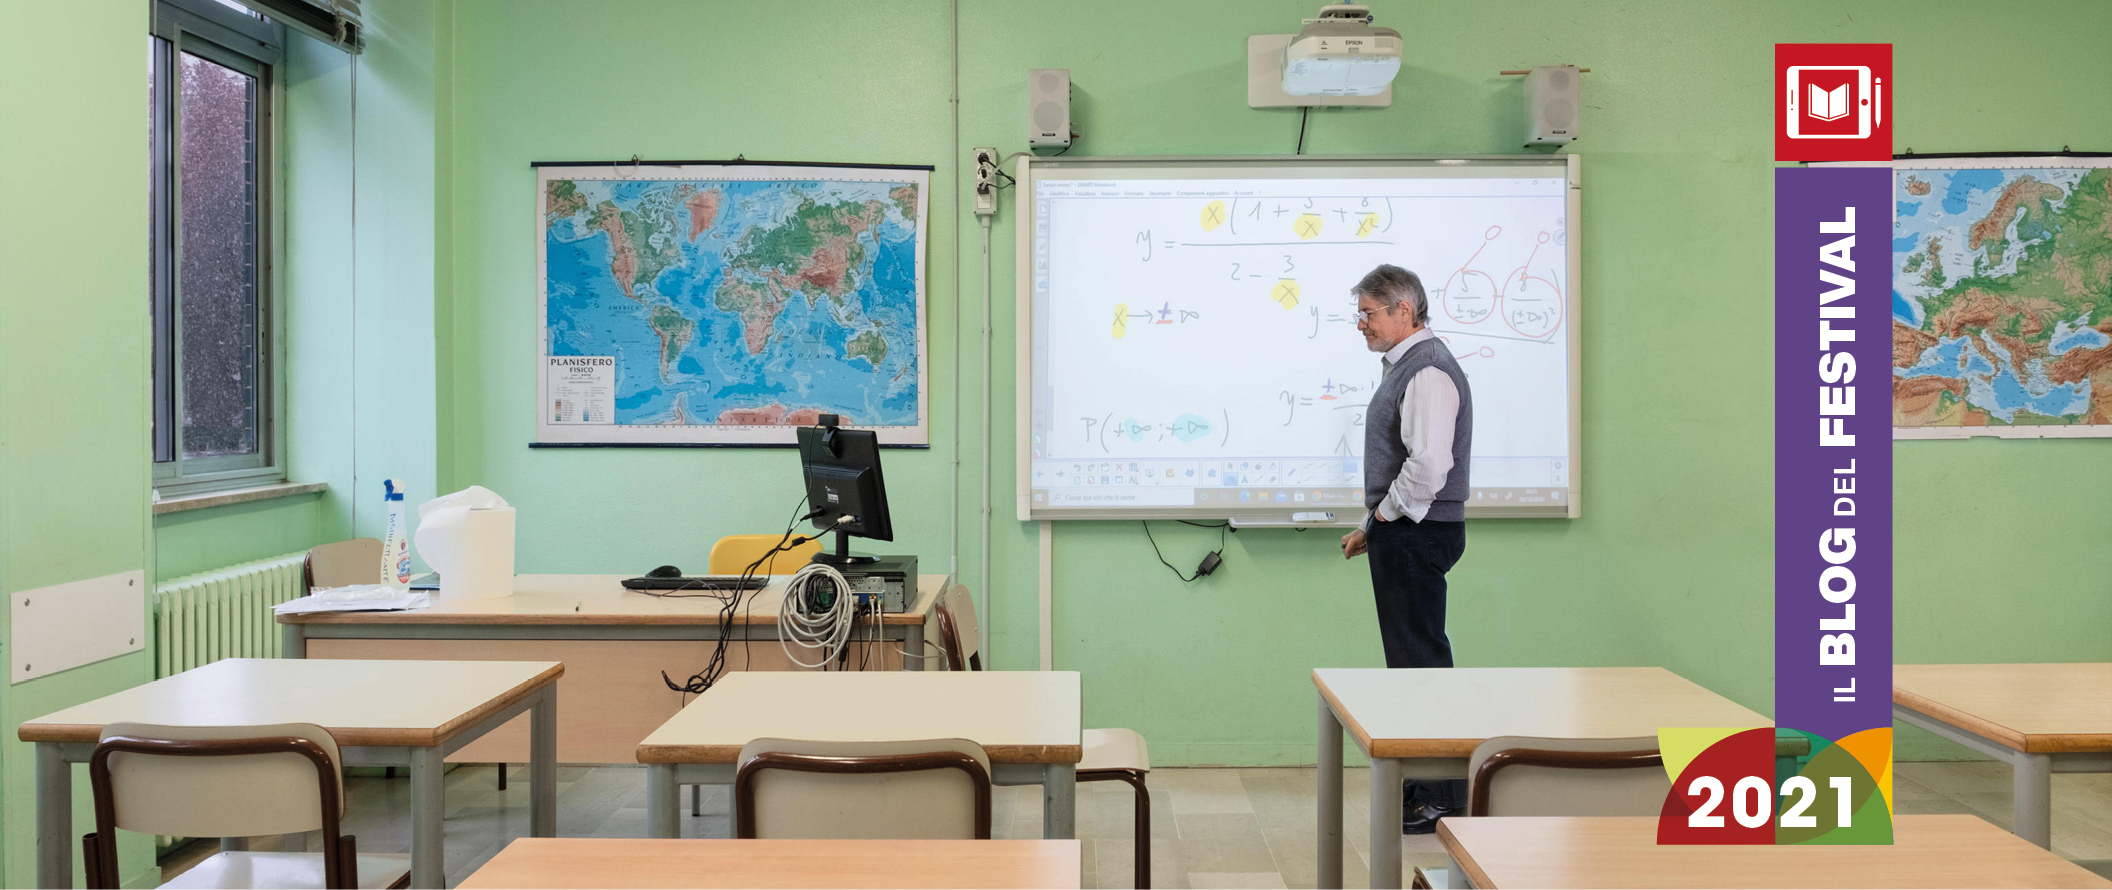 In Emilia-Romagna la dispersione scolastica scende al livello più basso di sempre